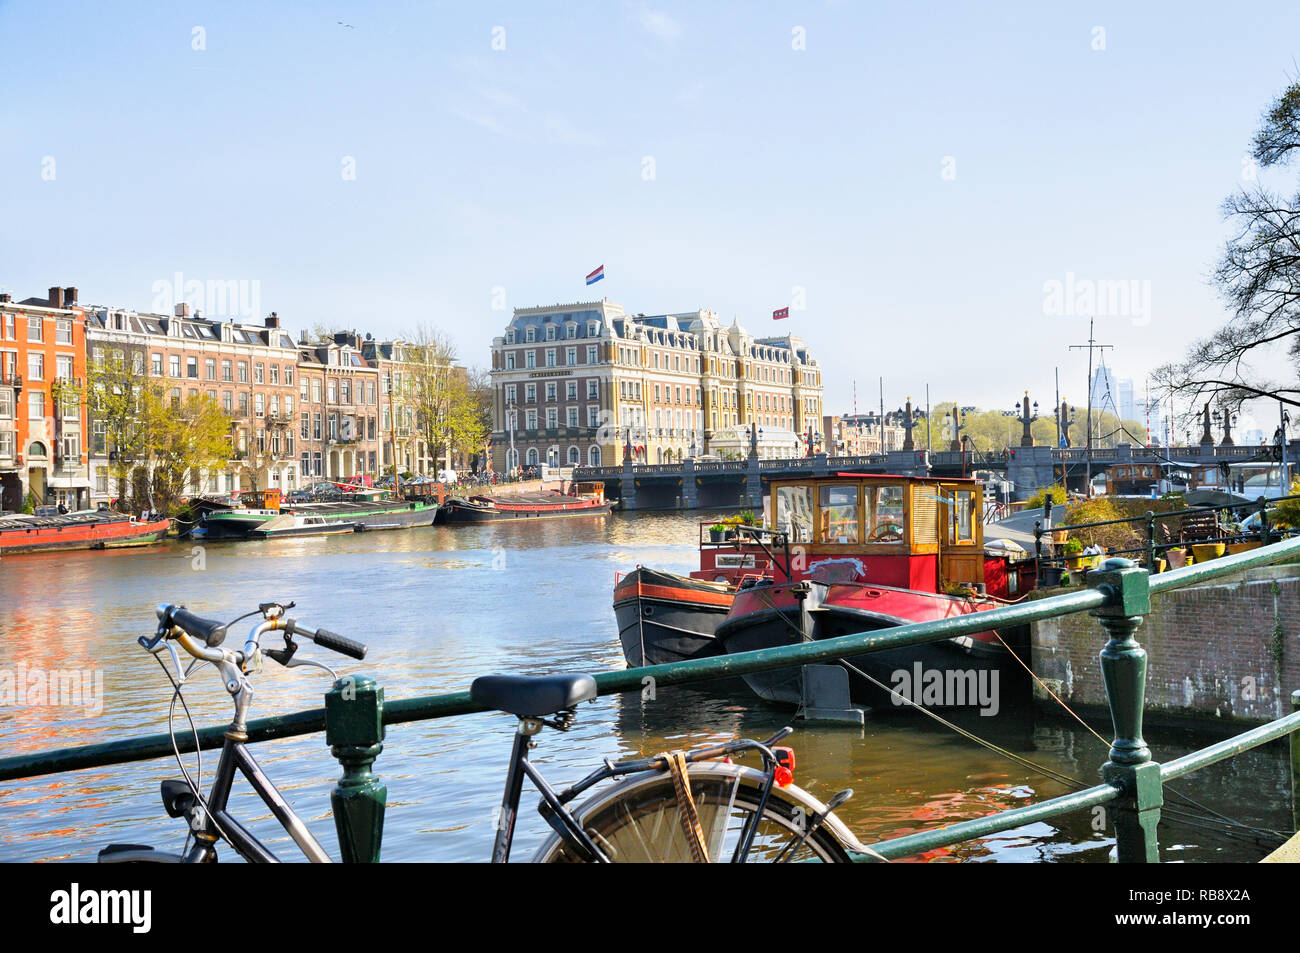 Afficher le long de la rivière Amstel vers Hogesluis et pont InterContinental Amstel Hotel, Amsterdam, Hollande du Nord, Pays-Bas Banque D'Images